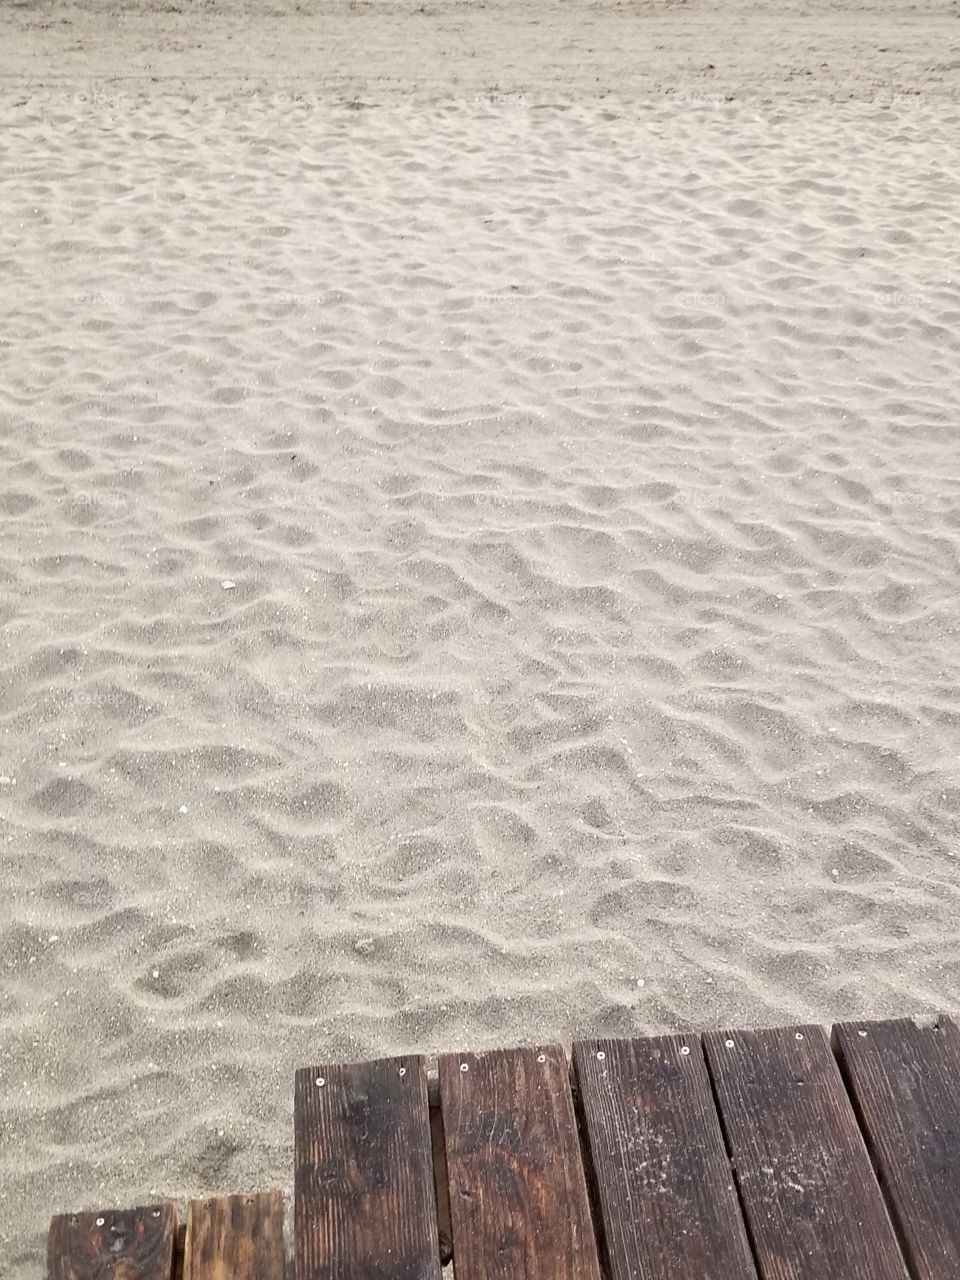 Footprints on the Beach.